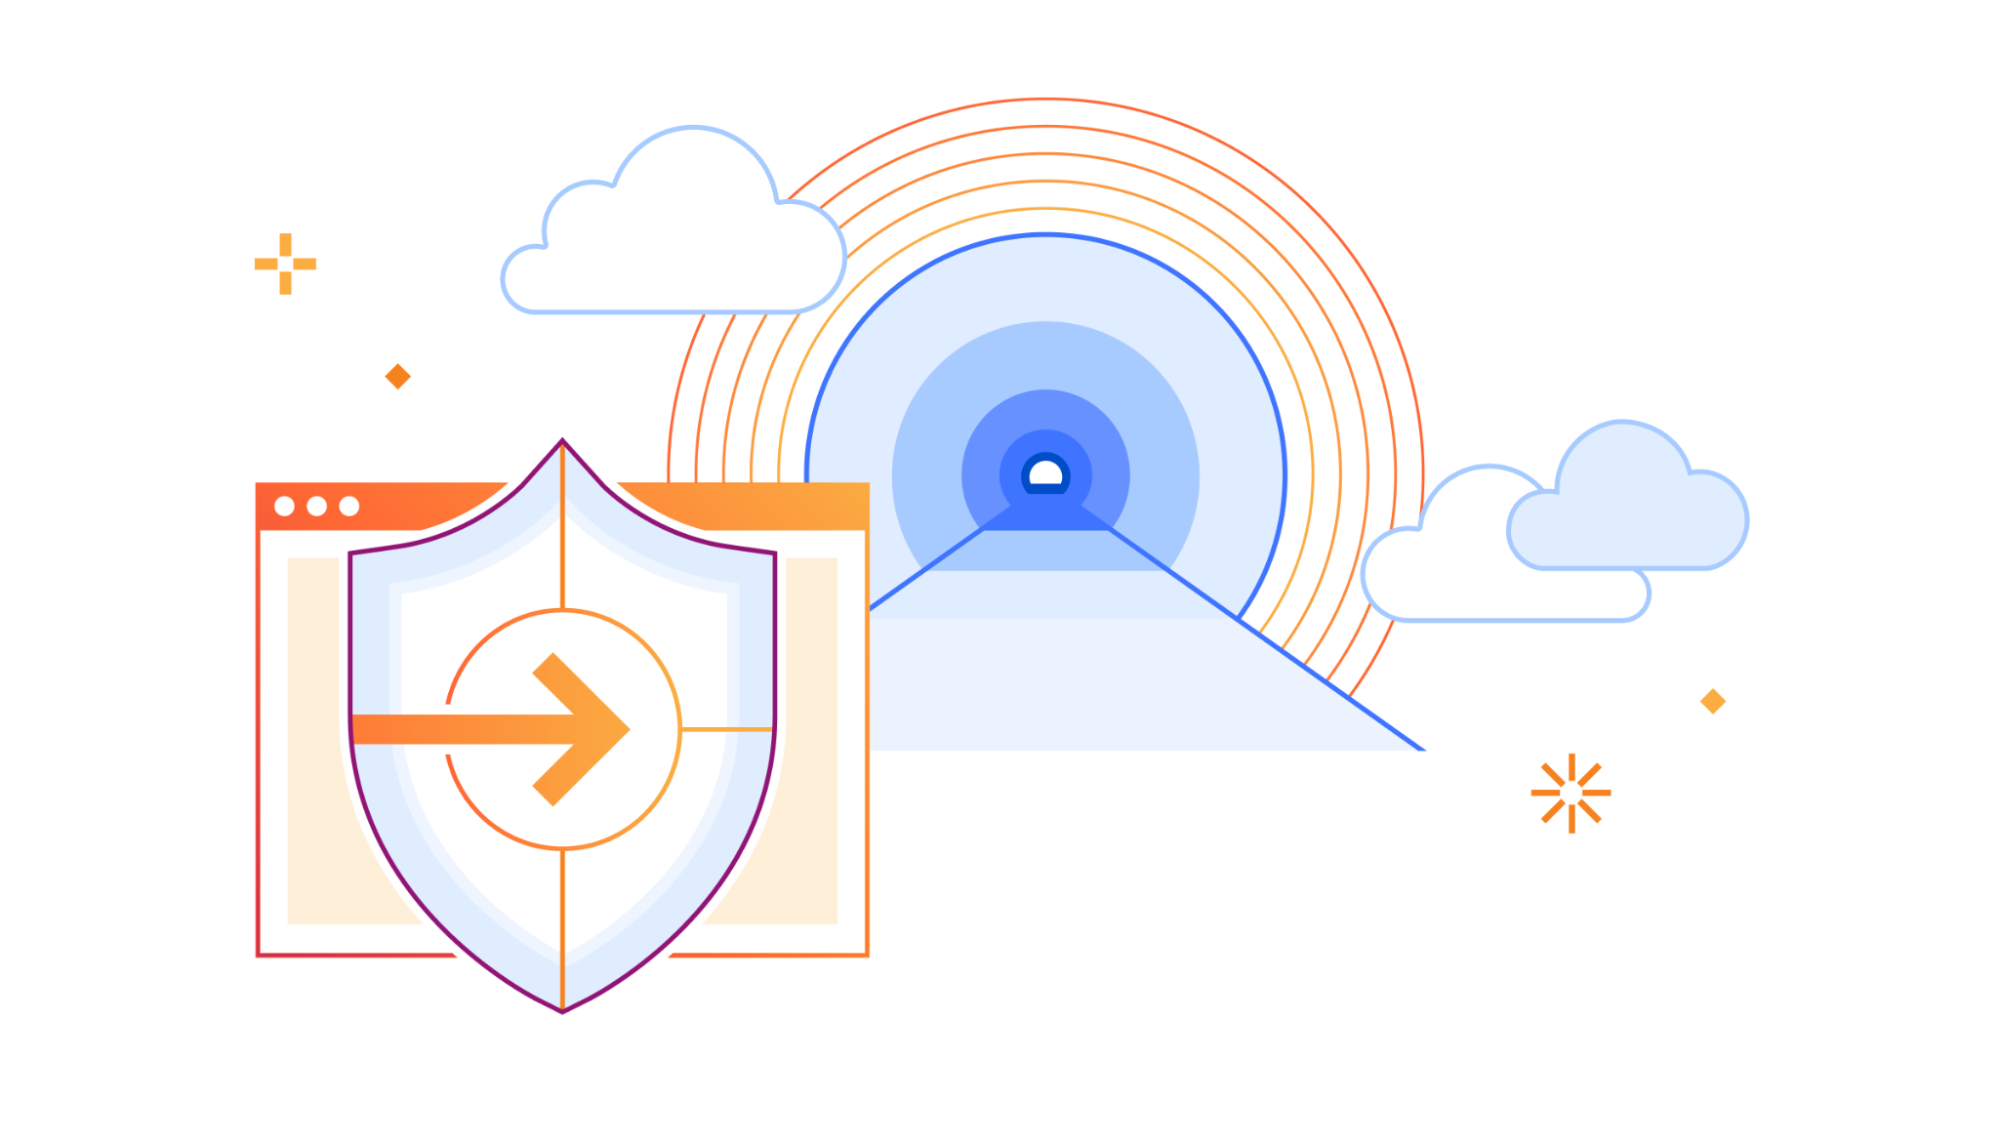 使用私人 IP 和 Cloudflare Tunnel 提升負載平衡：實現高效流量分配的安全路徑